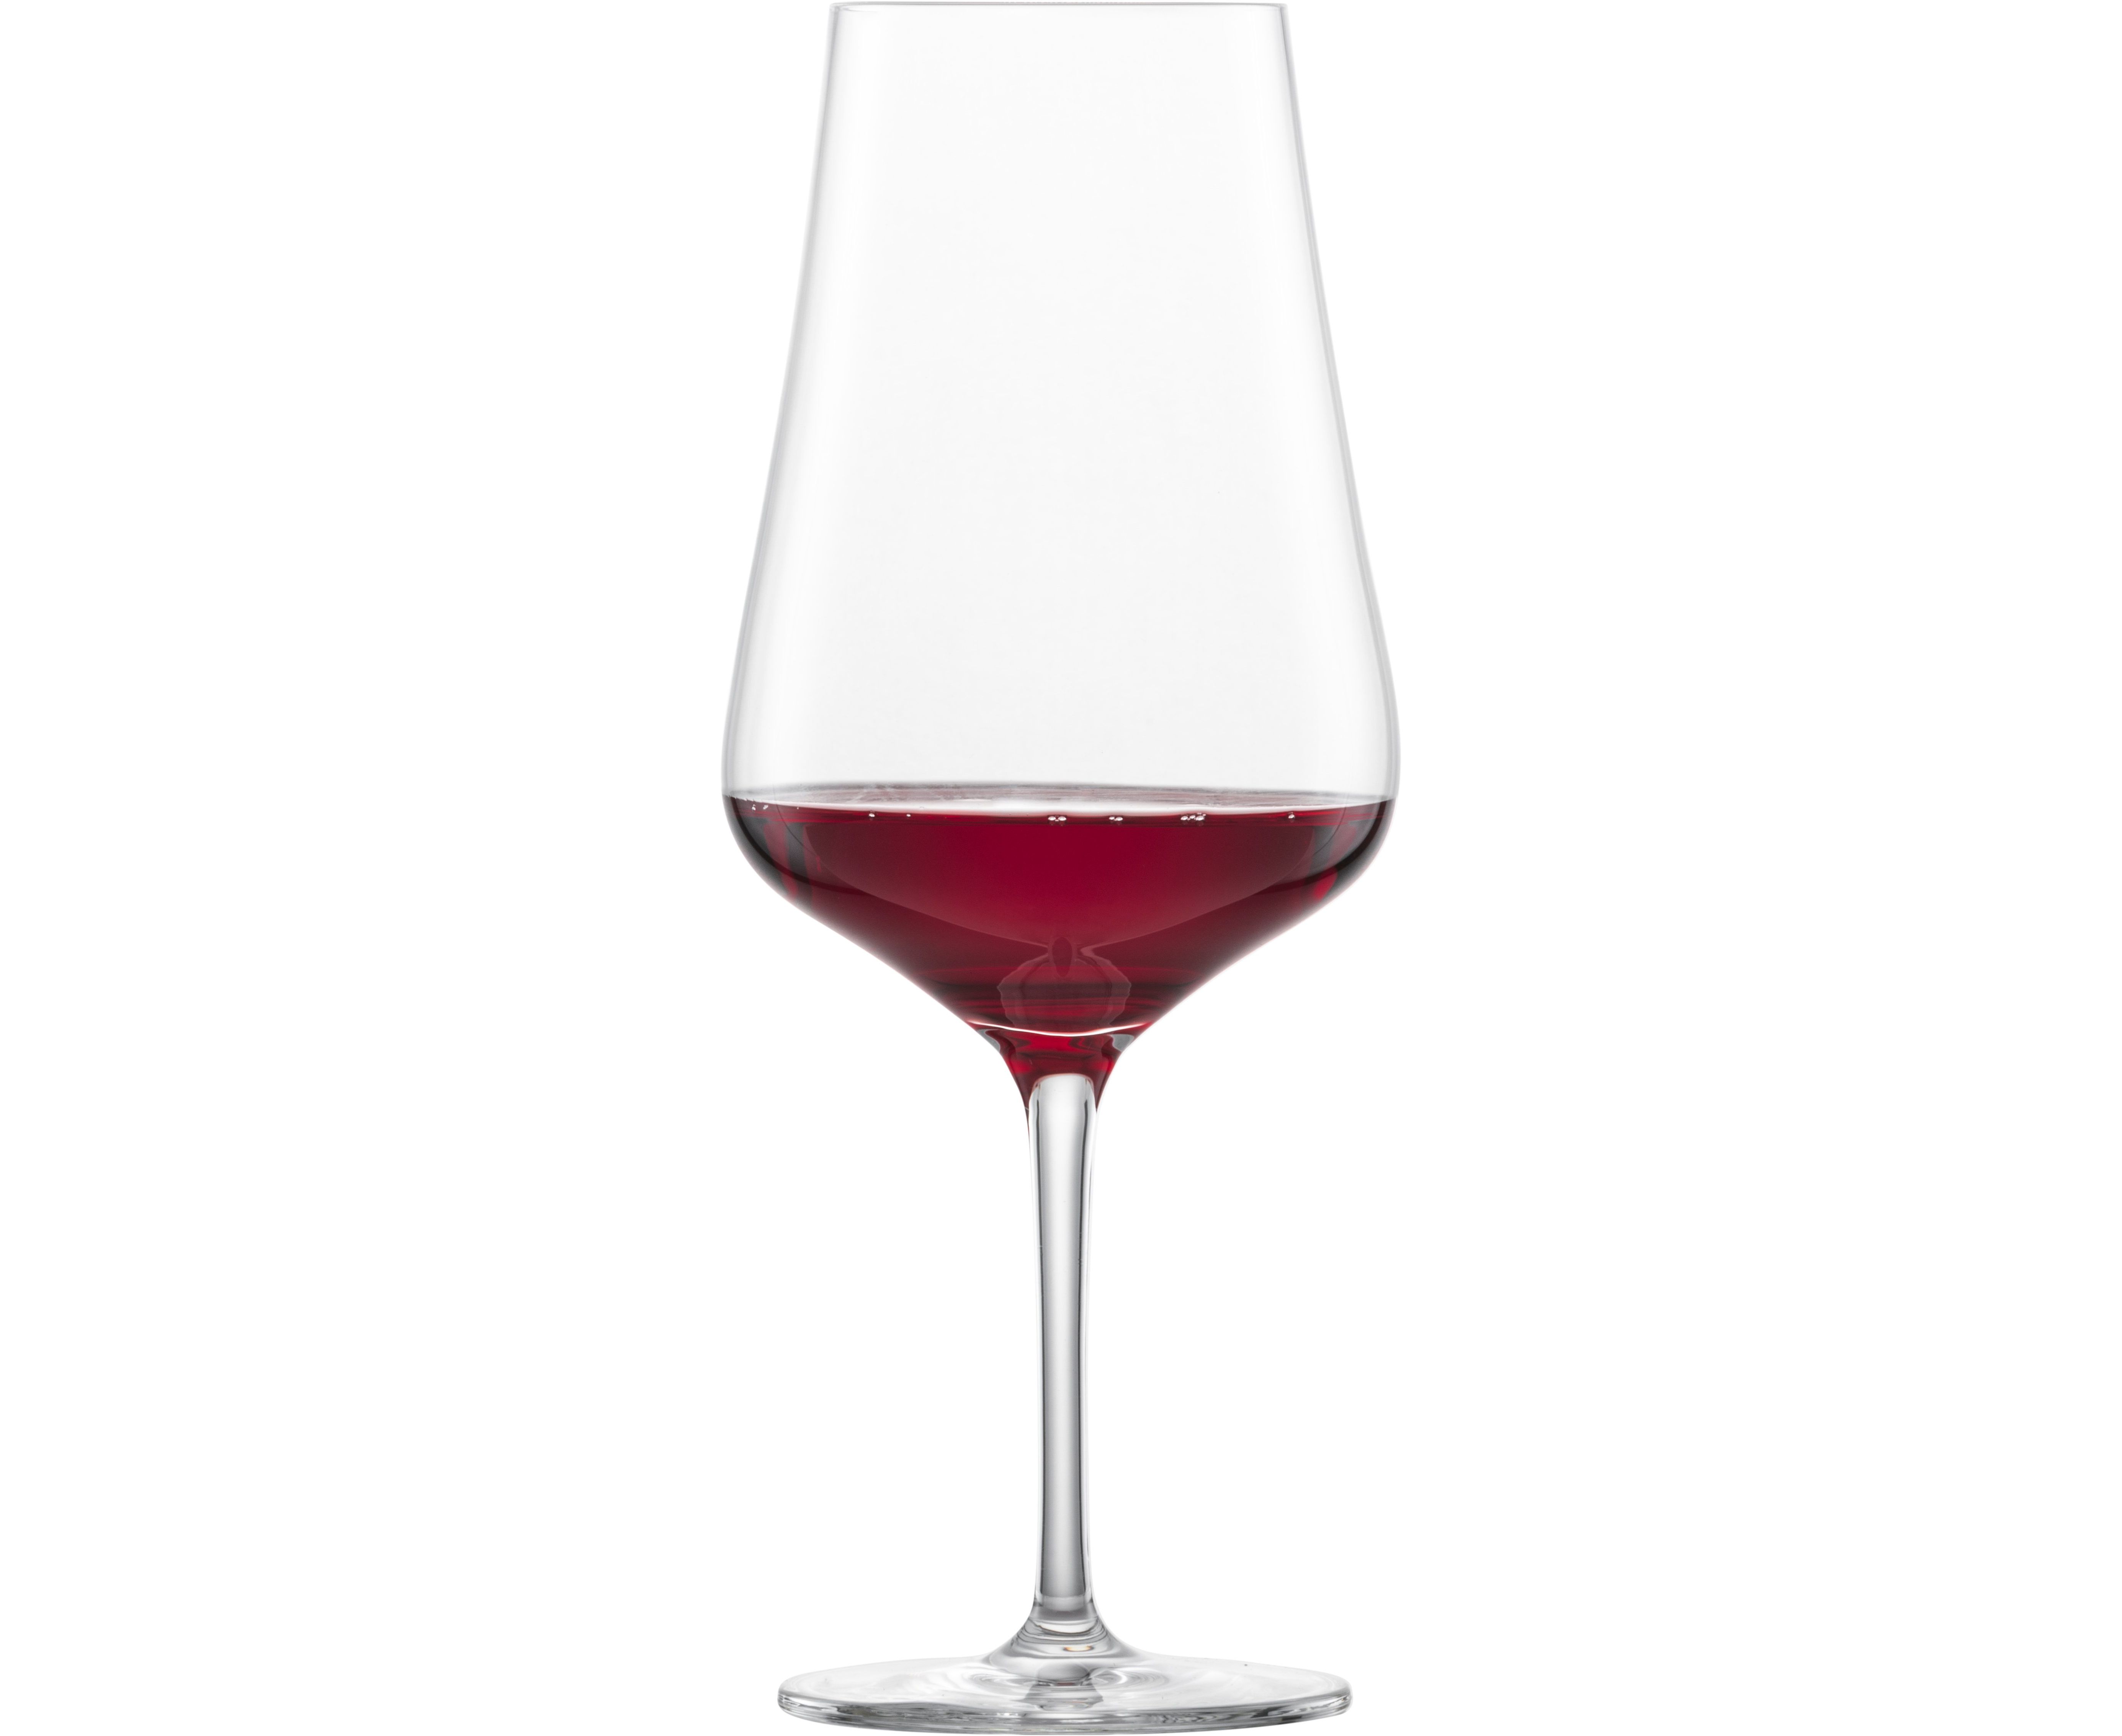 Бокал для вина литр. Riedel бокал для вина Sommeliers Tinto reserva 4400/31 620 мл. Бокал для вина Syrah 300 мл. Набор бокалов Zwiesel Glas для красного вина, 955 мл, 2 шт. Nachtmann 103738.